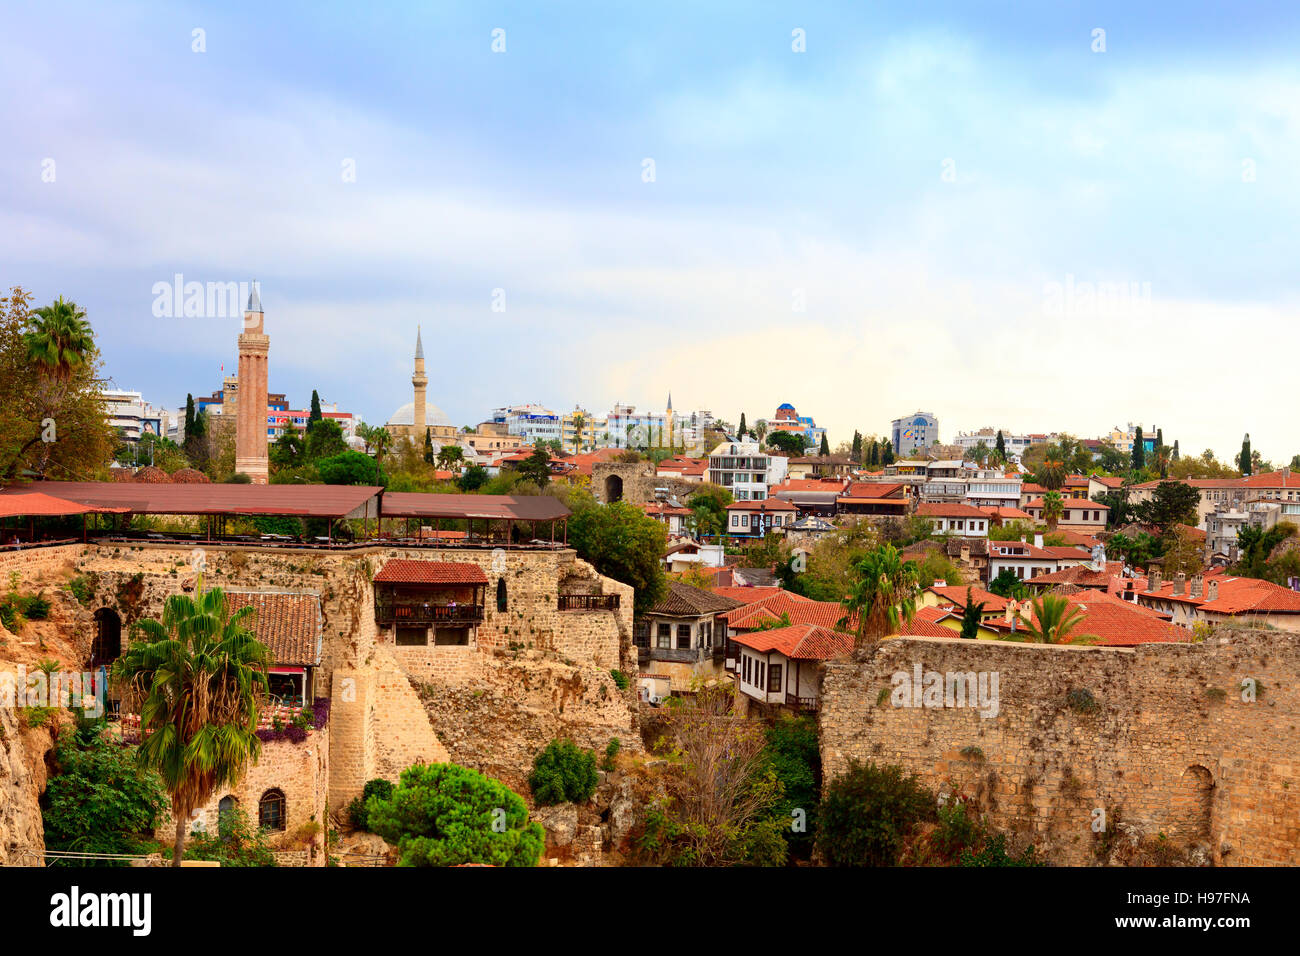 Toits, murs romains et les minarets de la vieille ville historique d'Antalya, connu sous le nom de Kaleici. Banque D'Images